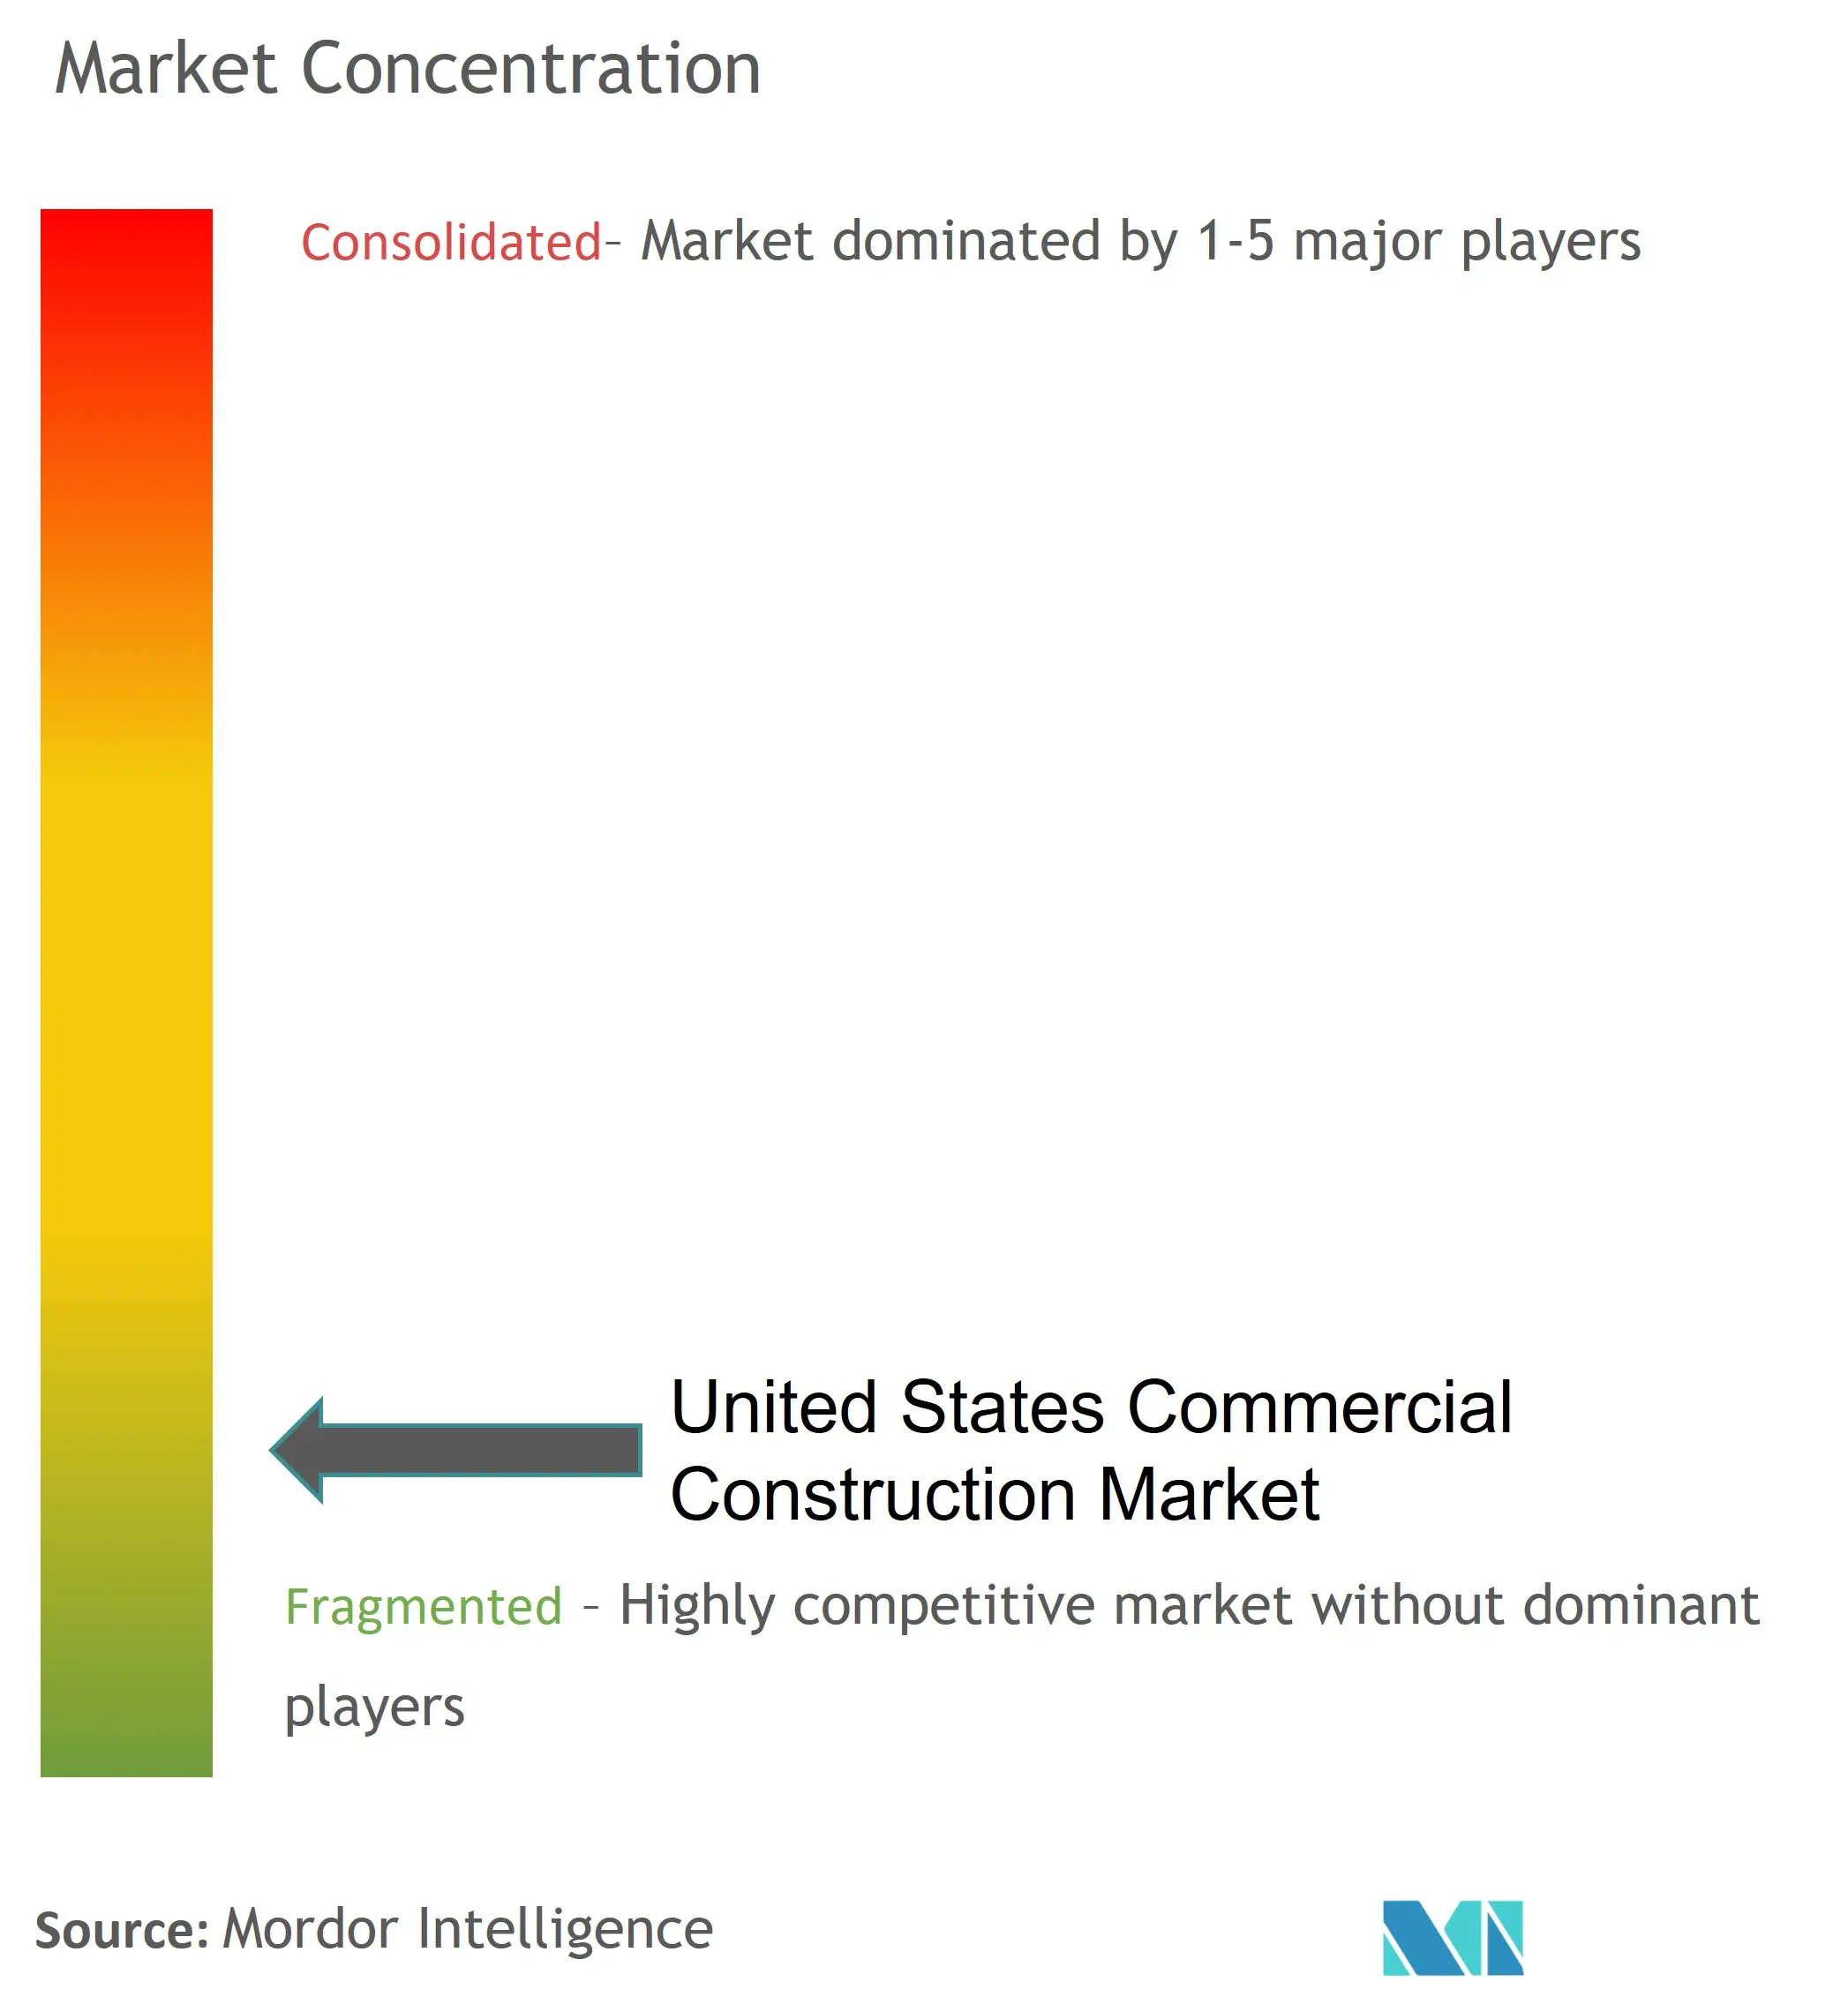 Mercado de la construcción comercial de los Estados Unidos - Panorama competitivo